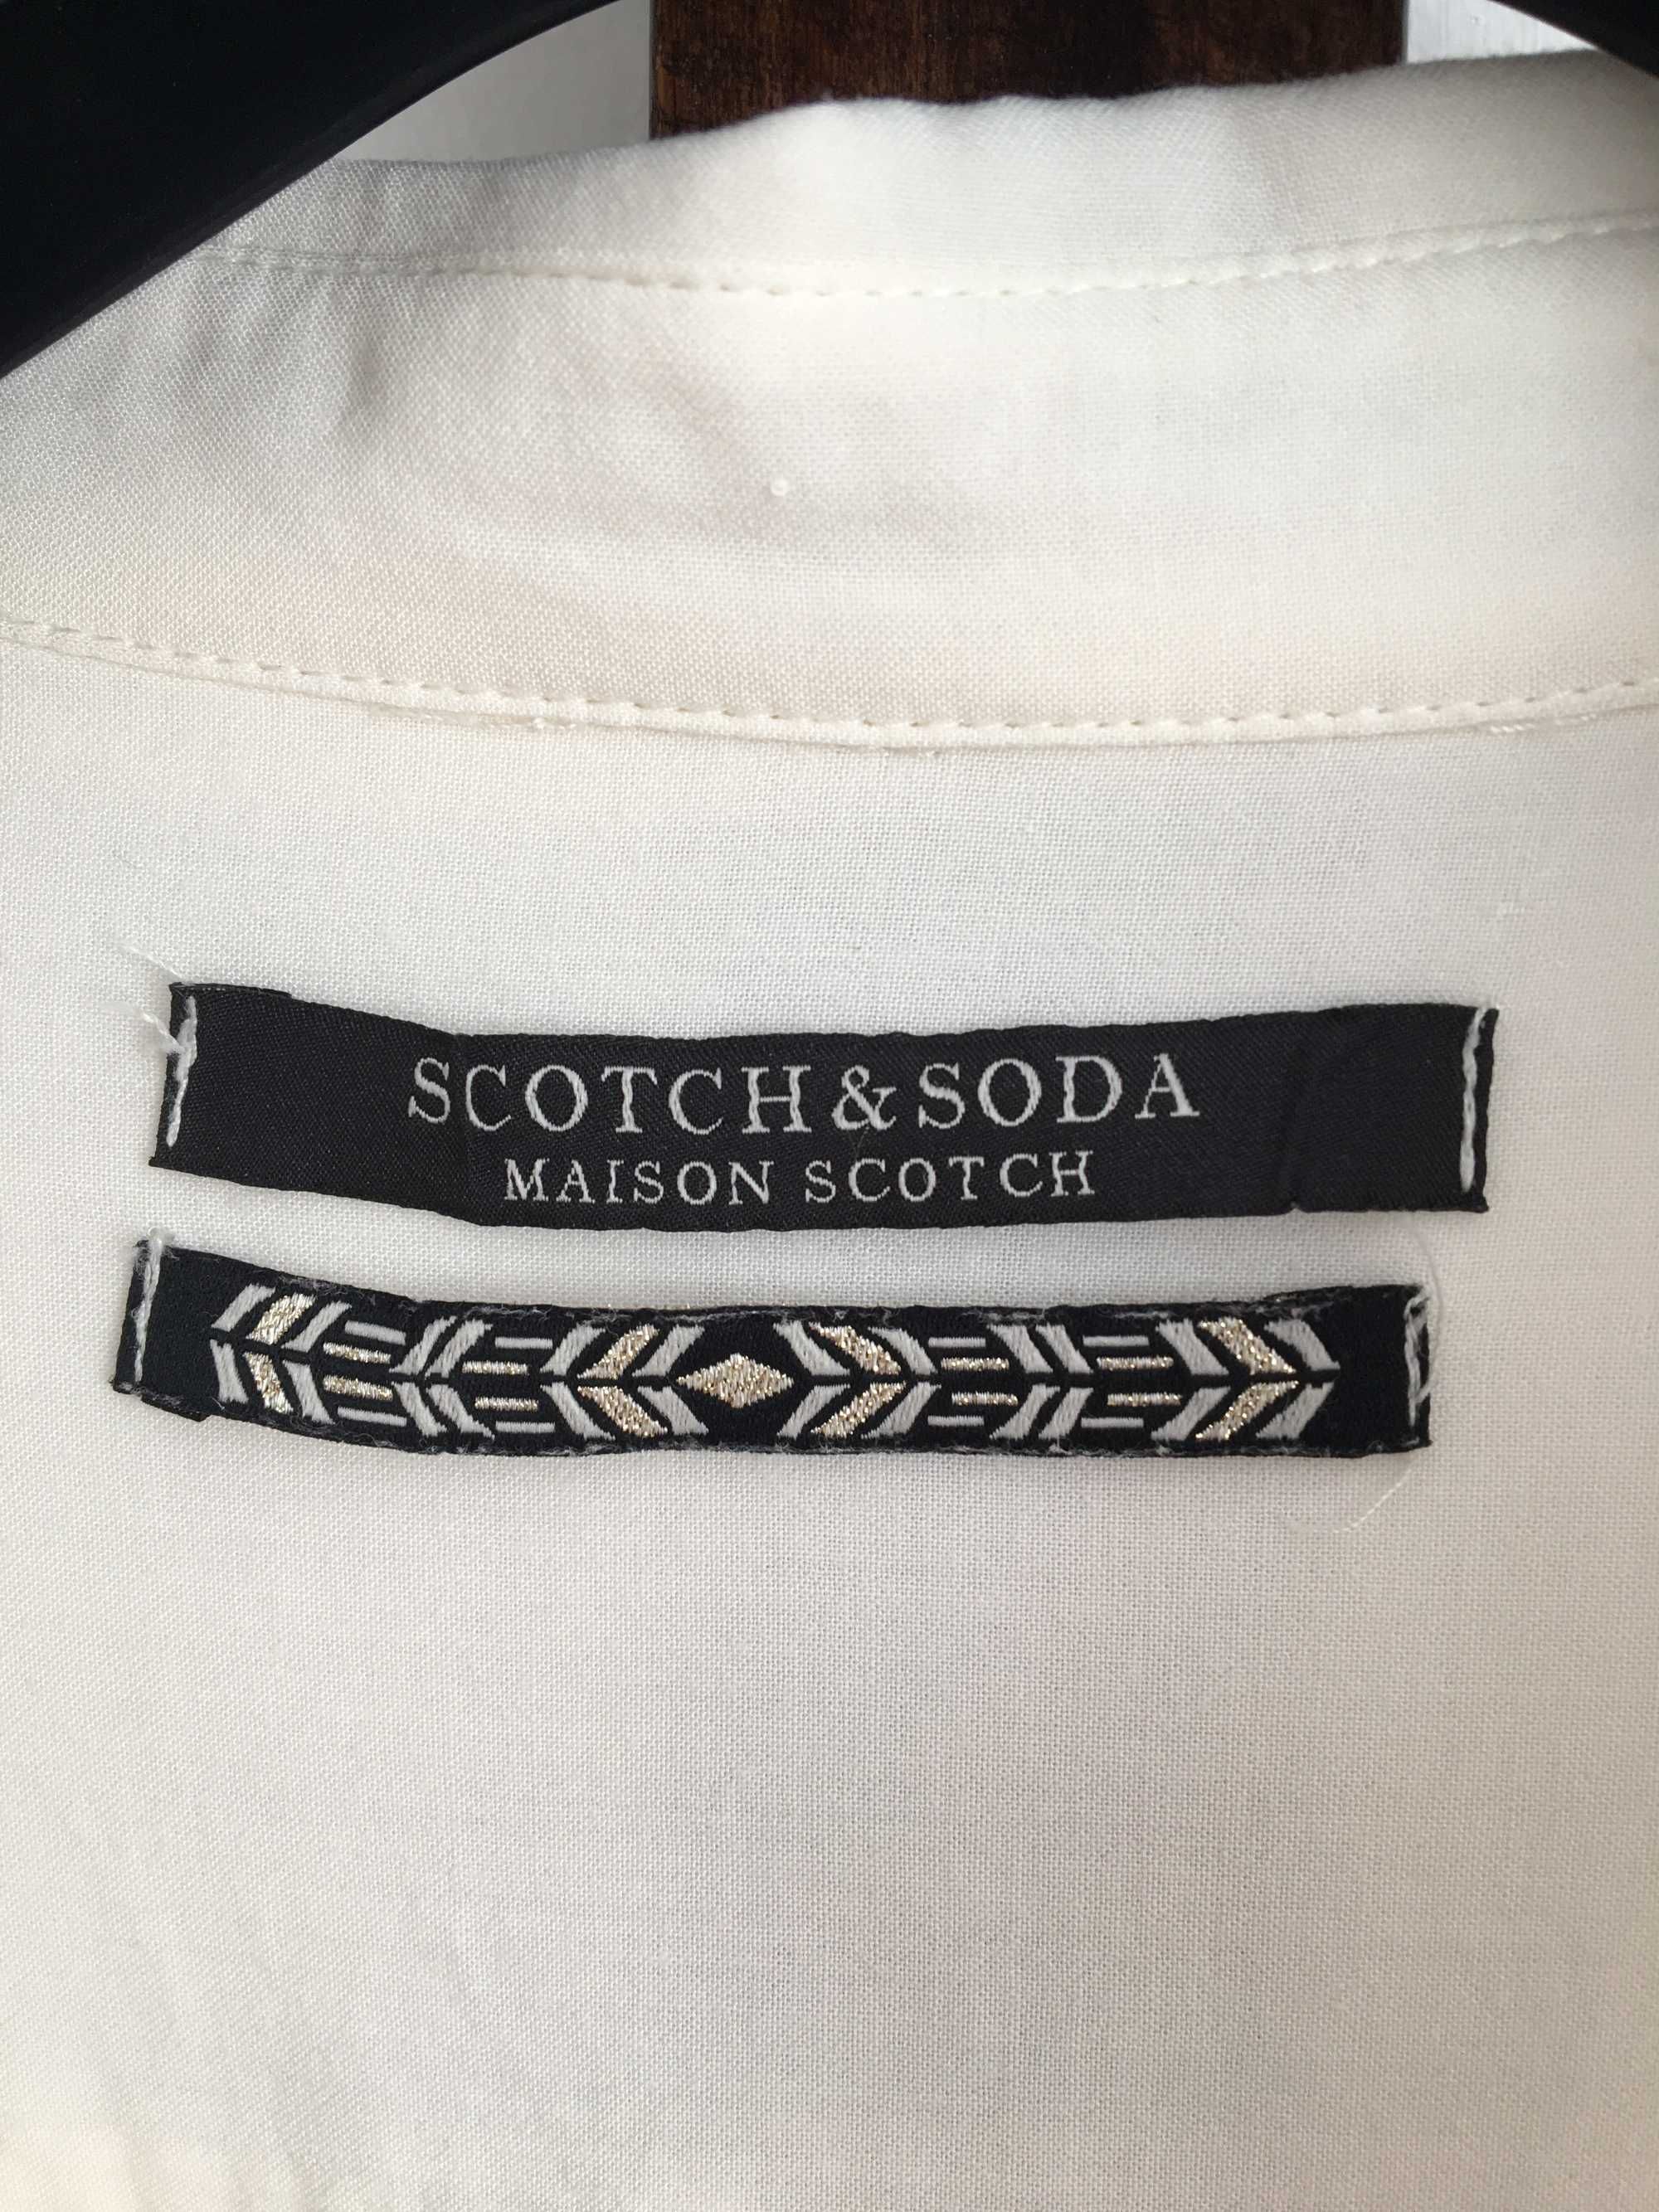 Дамска риза SCOTCH&SODA, MAISON SCOTCH, елегантна, цвят сметана